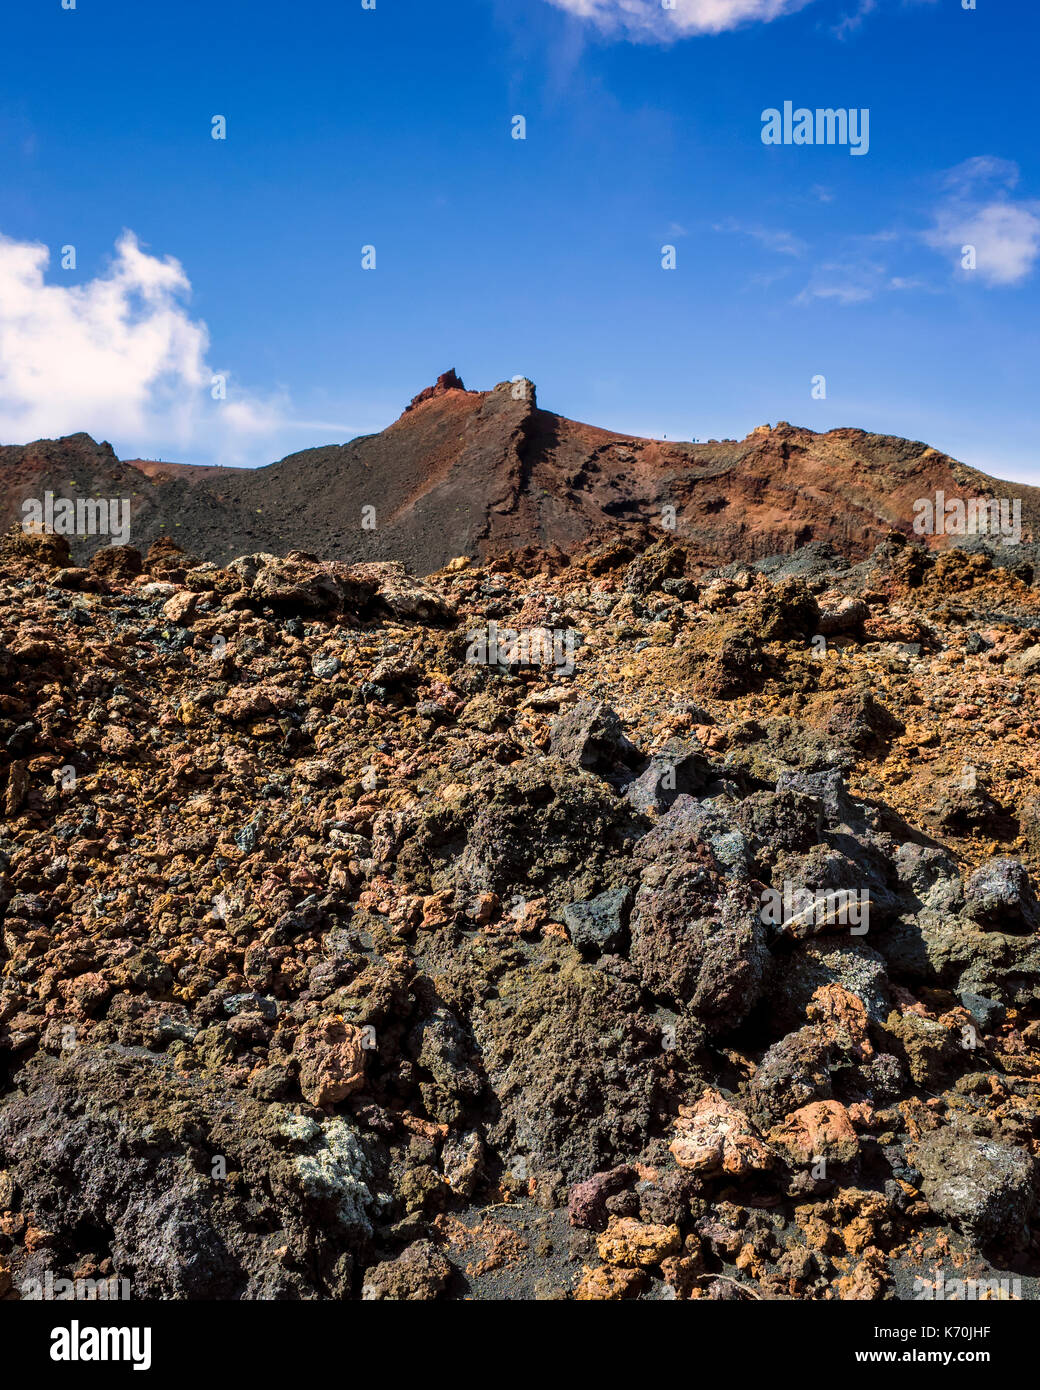 Los Volcanes de Teneguía, Fuencaliente, La Palma. Ein Blick auf die karge Landschaft rund um den Vulkan. Es ist möglich, sich vorzustellen, wie die Lava hier auf dem Land niedergelassen nach vorherigen Ausbruch des Vulkans. Die Felsen sind sehr unterschiedlich mit Braun in den Vordergrund in Richtung rot- und verkohlte Kohle hinter. Dies macht einen großen Kontrast mit dem blauen Himmel im Hintergrund. Keine erosion sichtbar ist und die Natur hat noch seinen Kurs mit Vegetation zu nehmen. Stockfoto